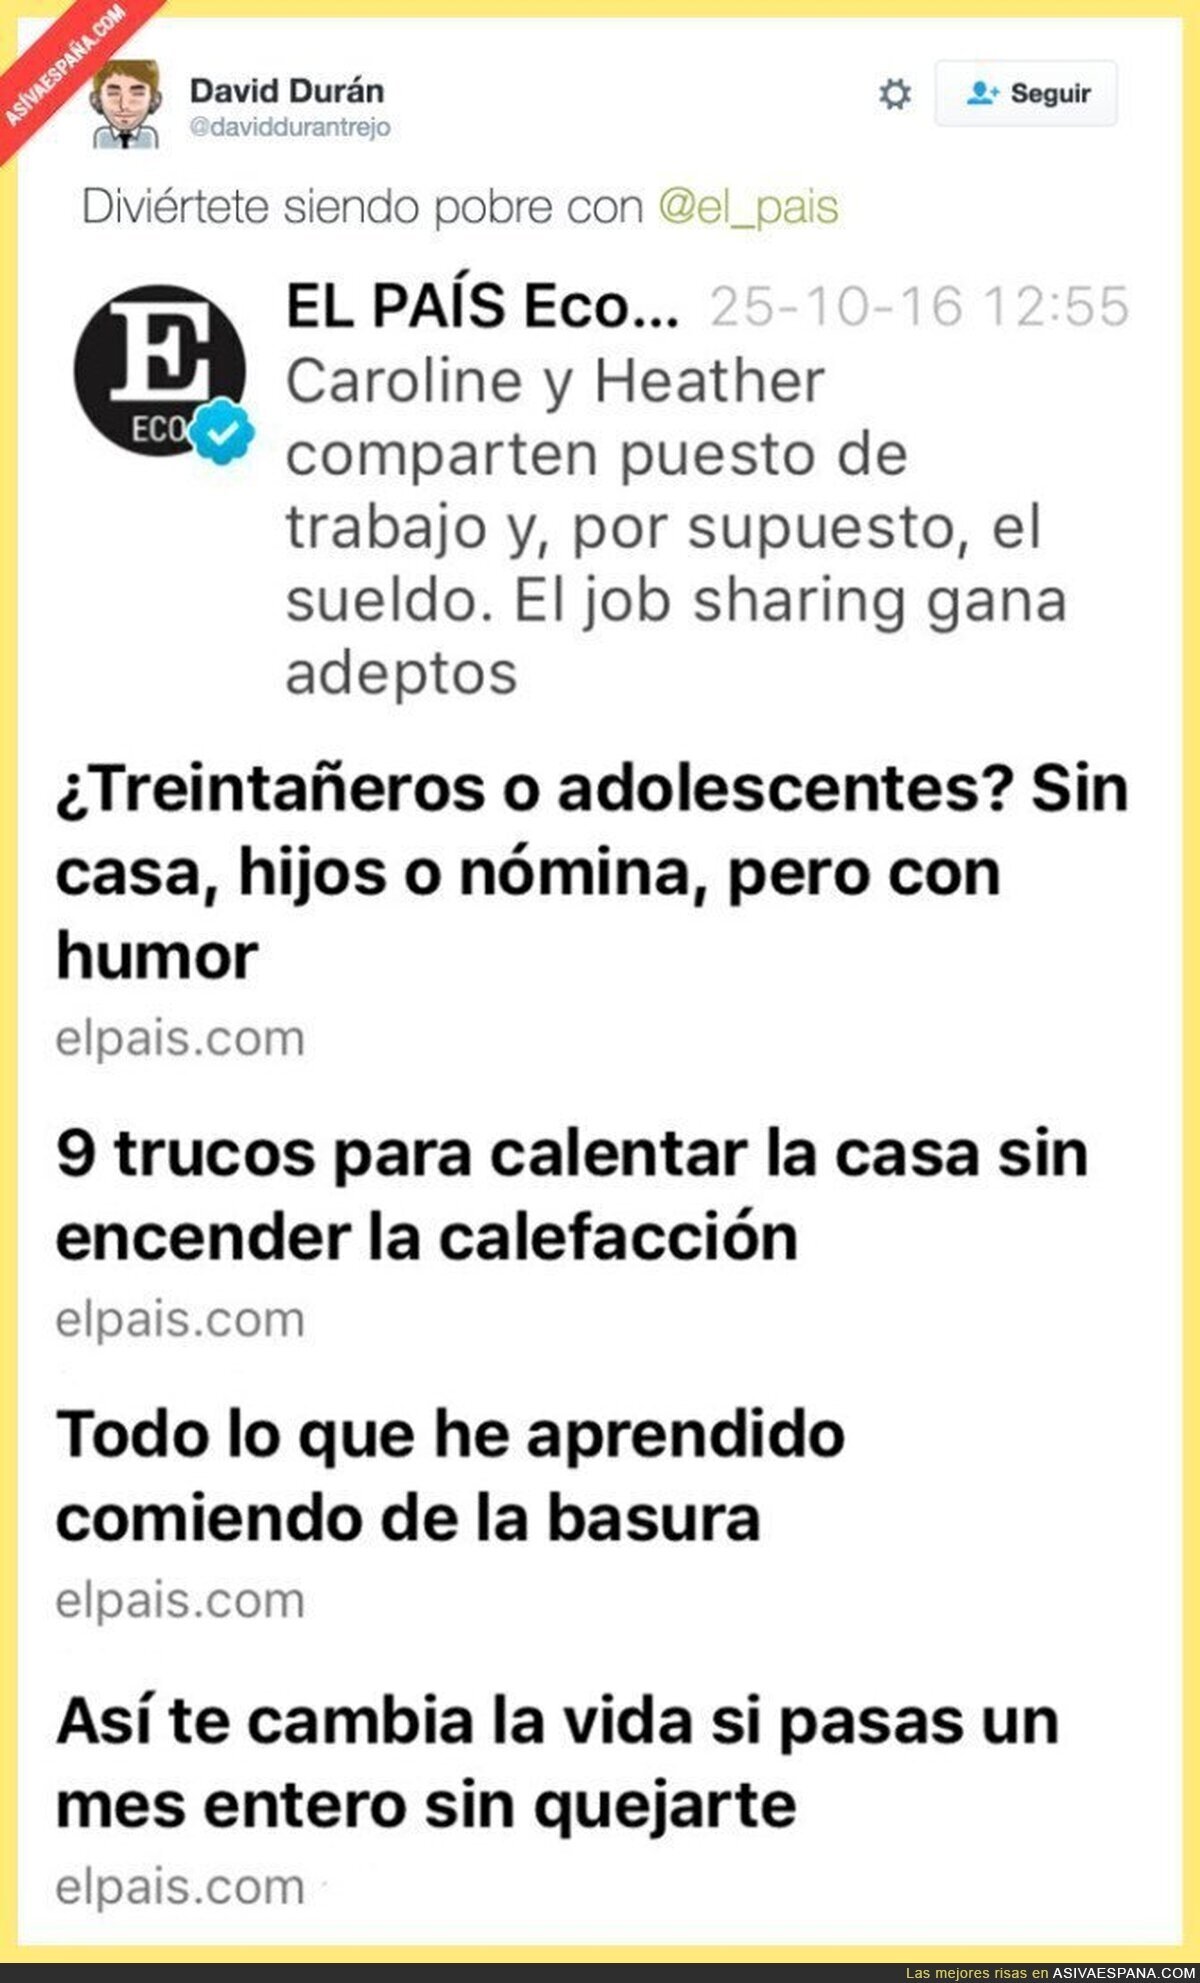 El País normalizando con humor el drama de la pobreza